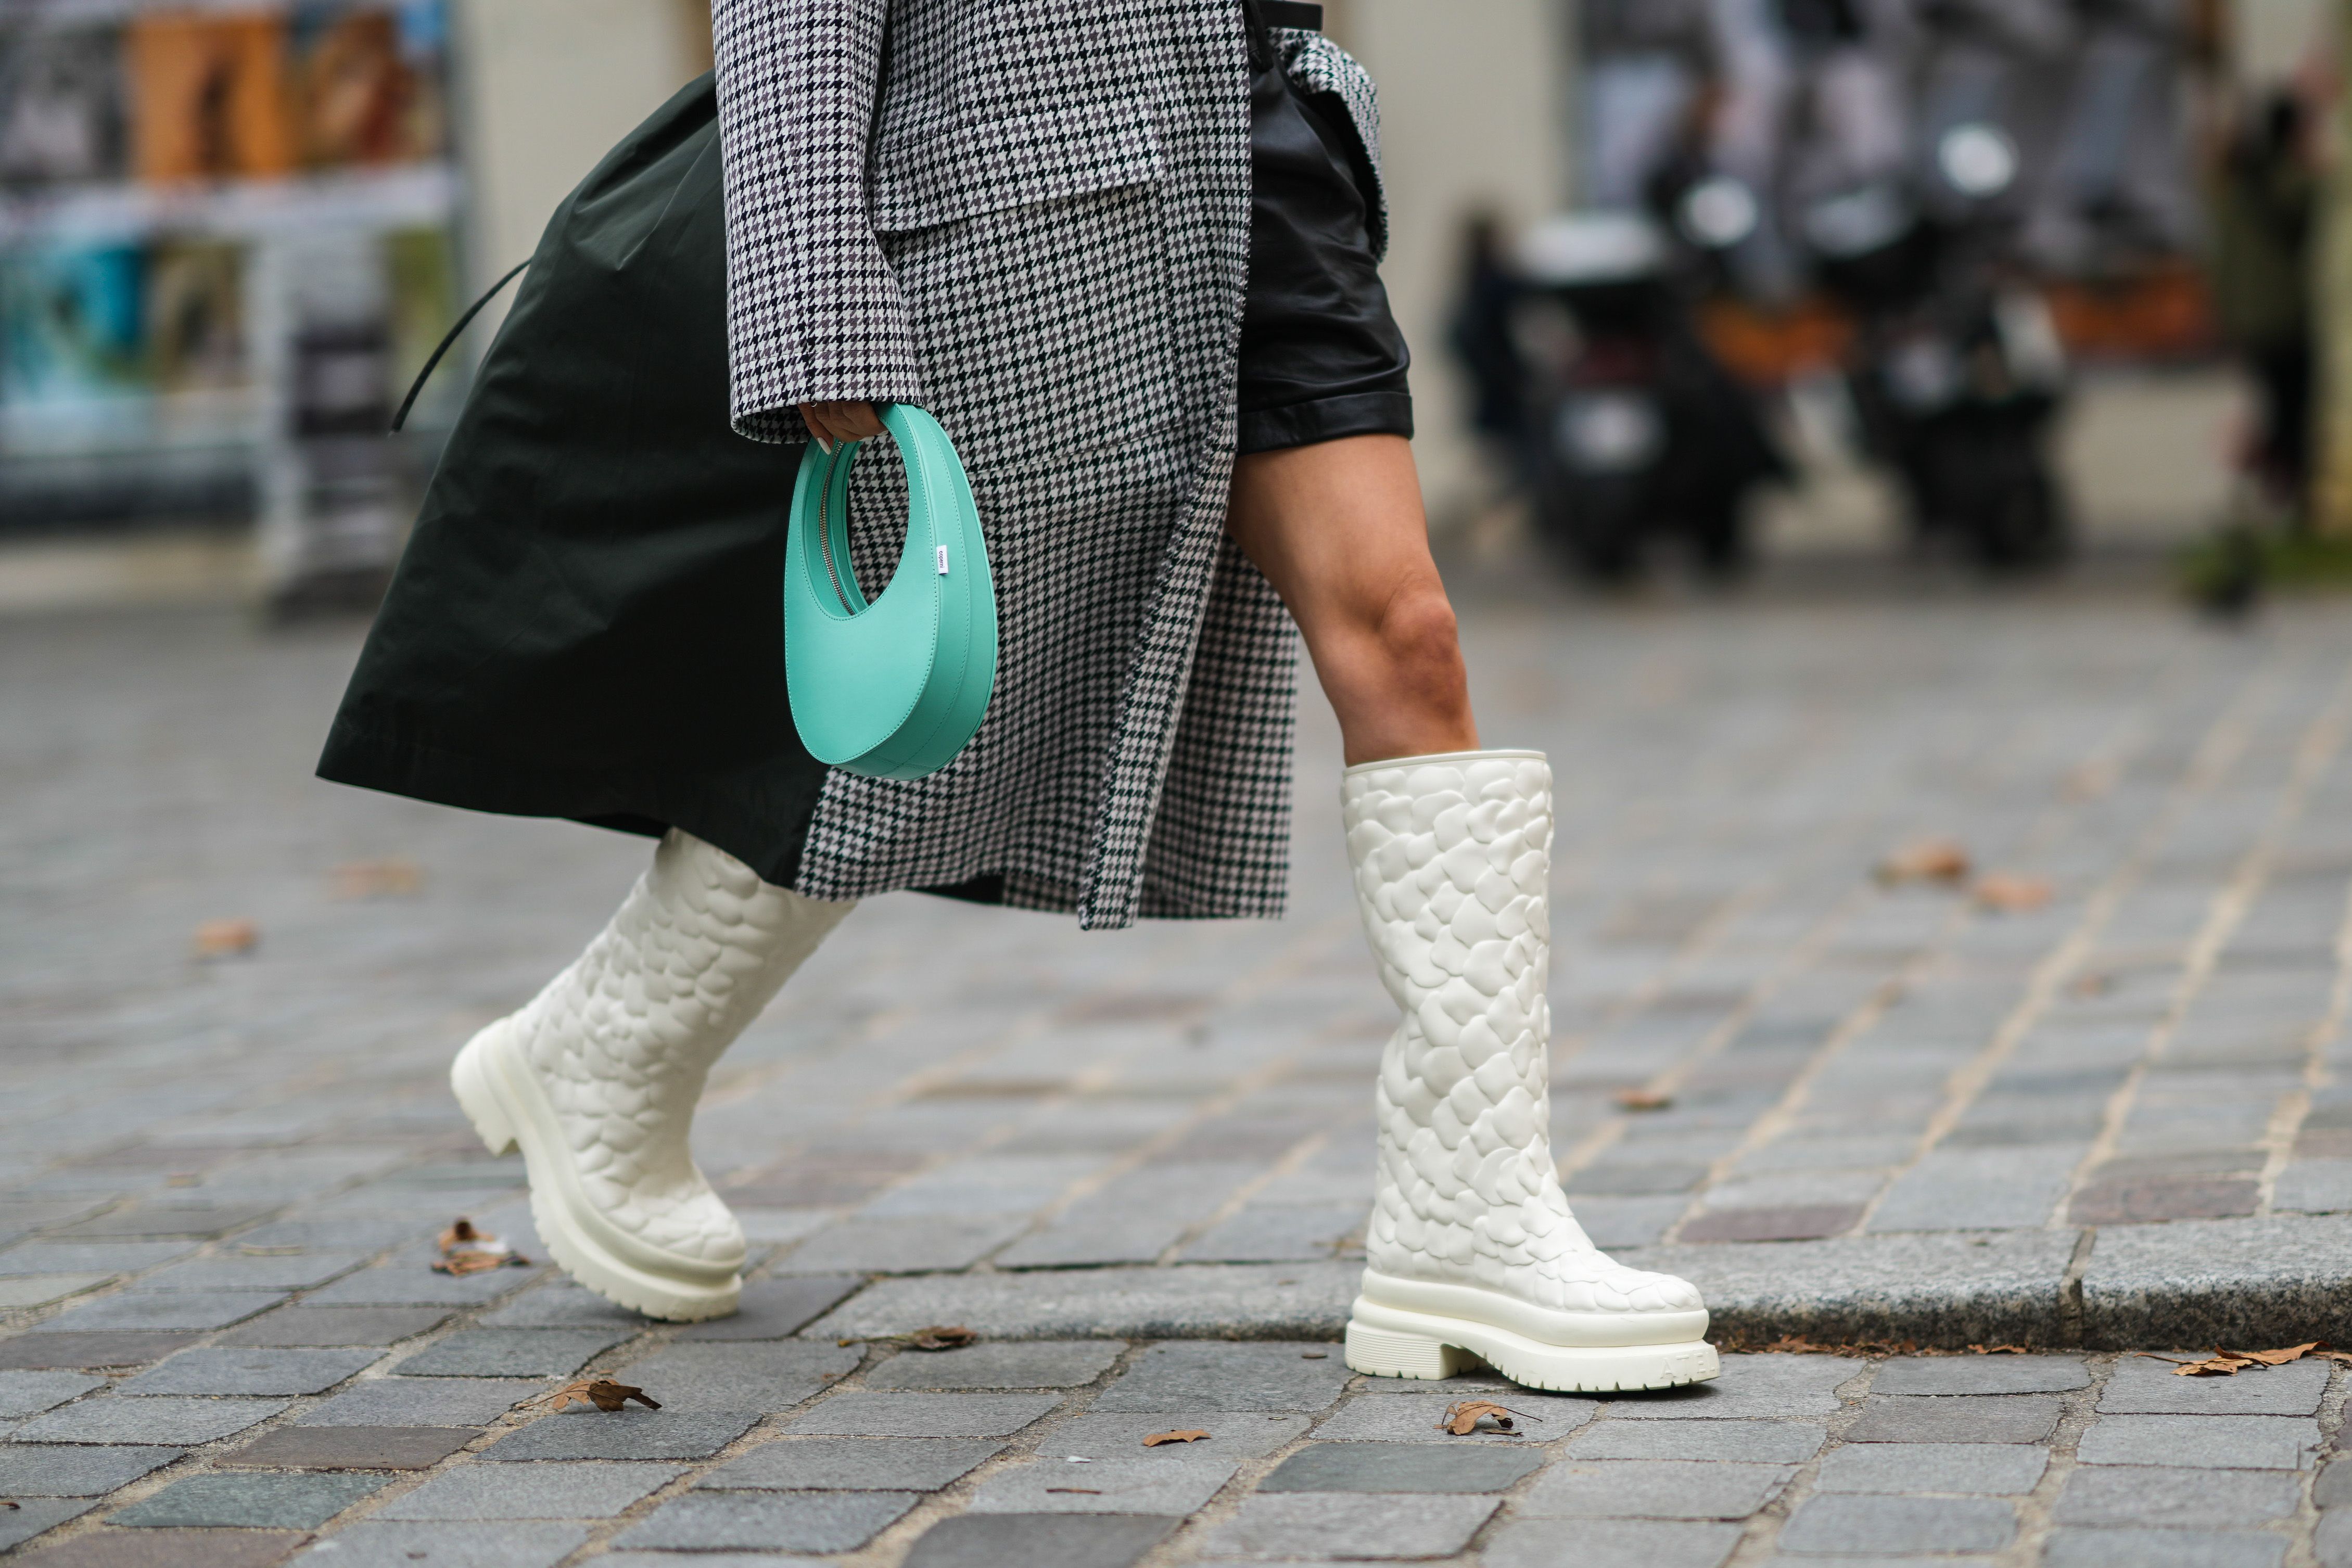 Nuevas ideas para combinar tus zapatillas blancas preferidas este invierno  - Foto 1